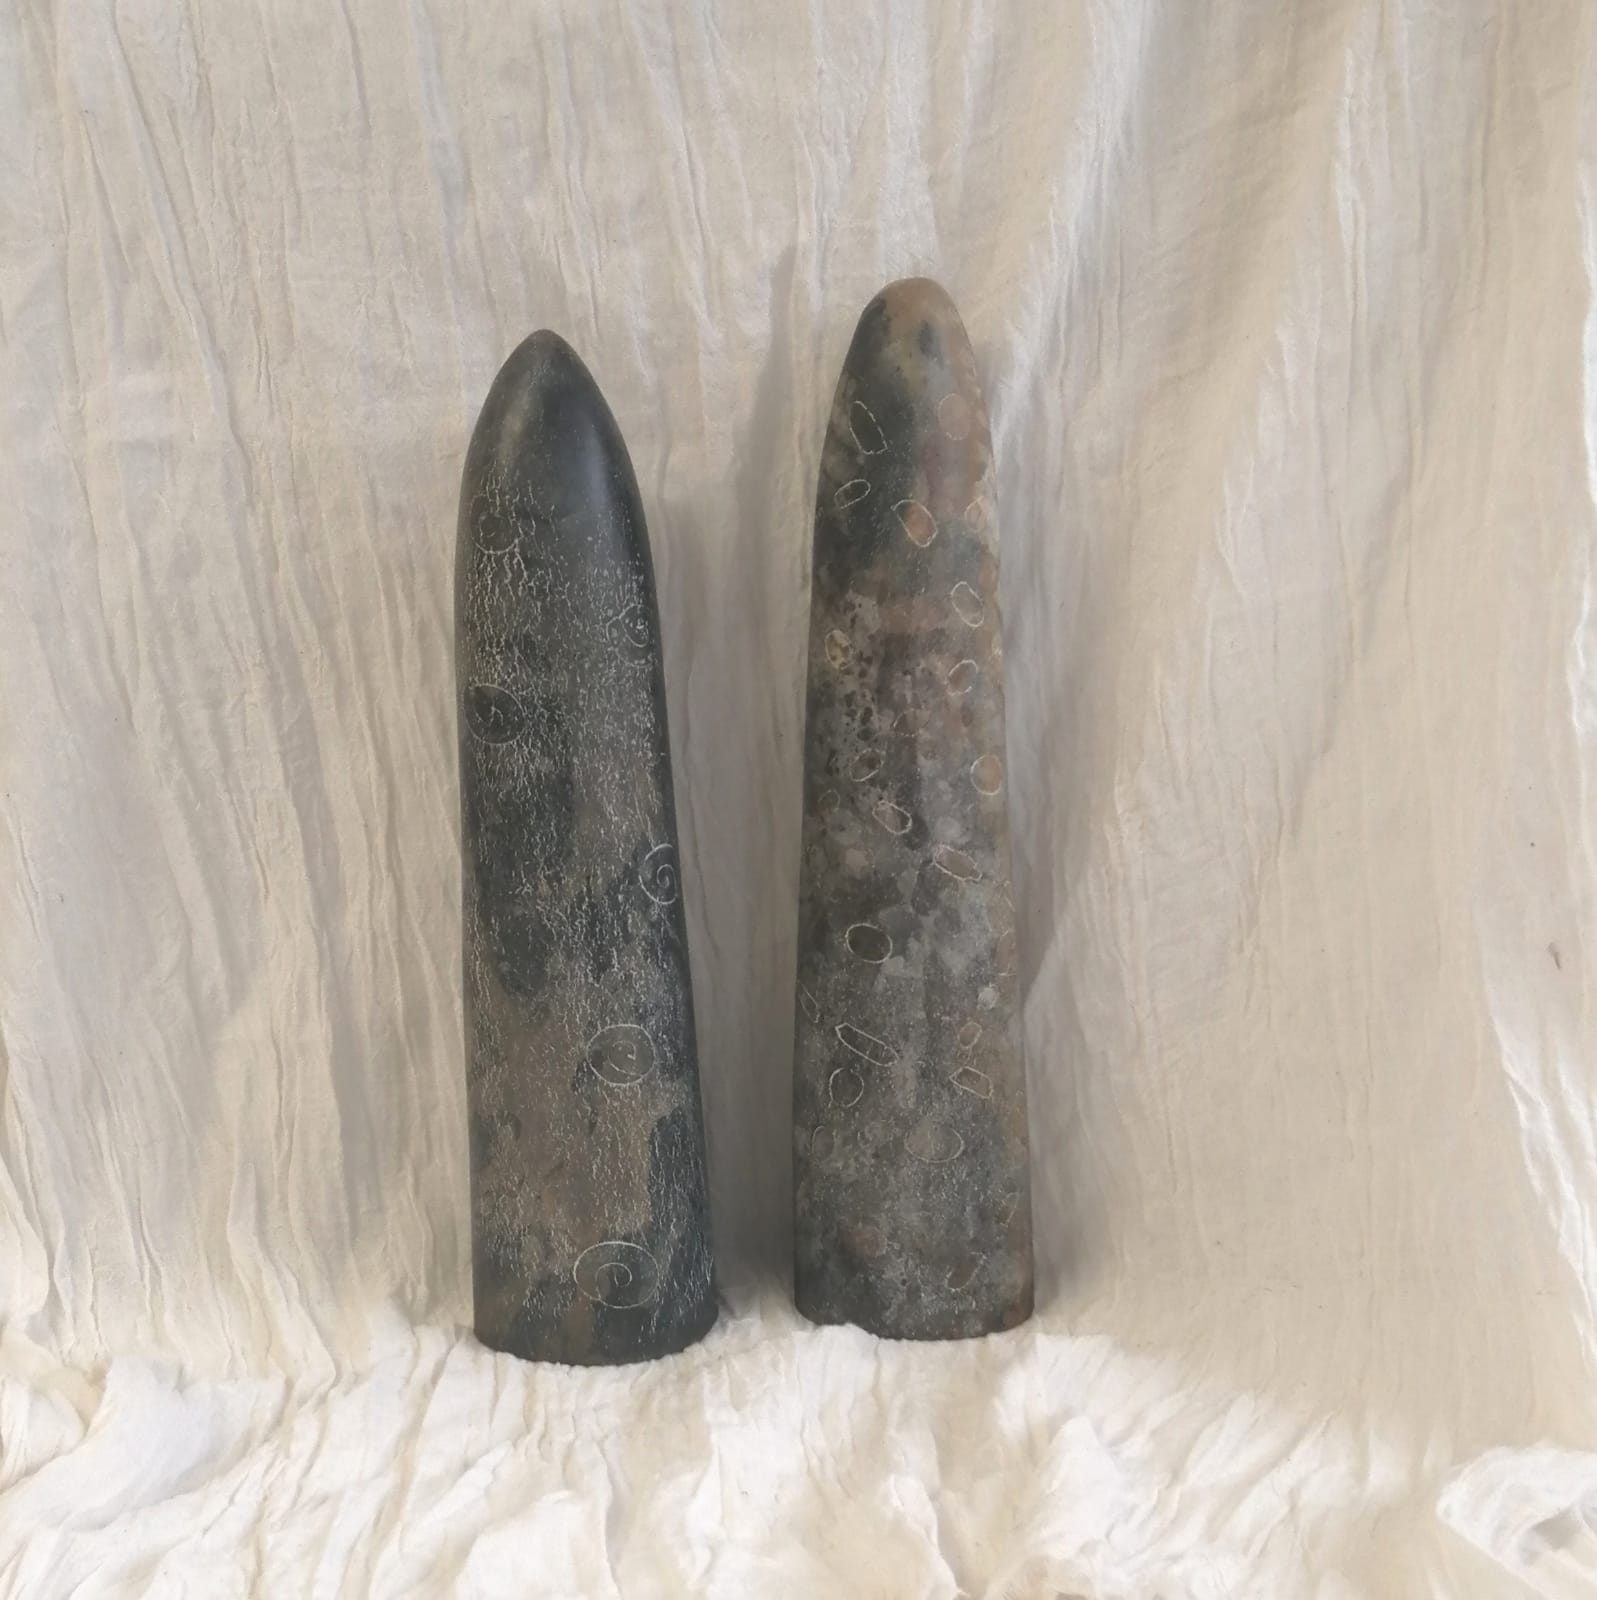 2 KUMPFE Vasi - sculture fatti a mano in ceramica raku - Zama Labz